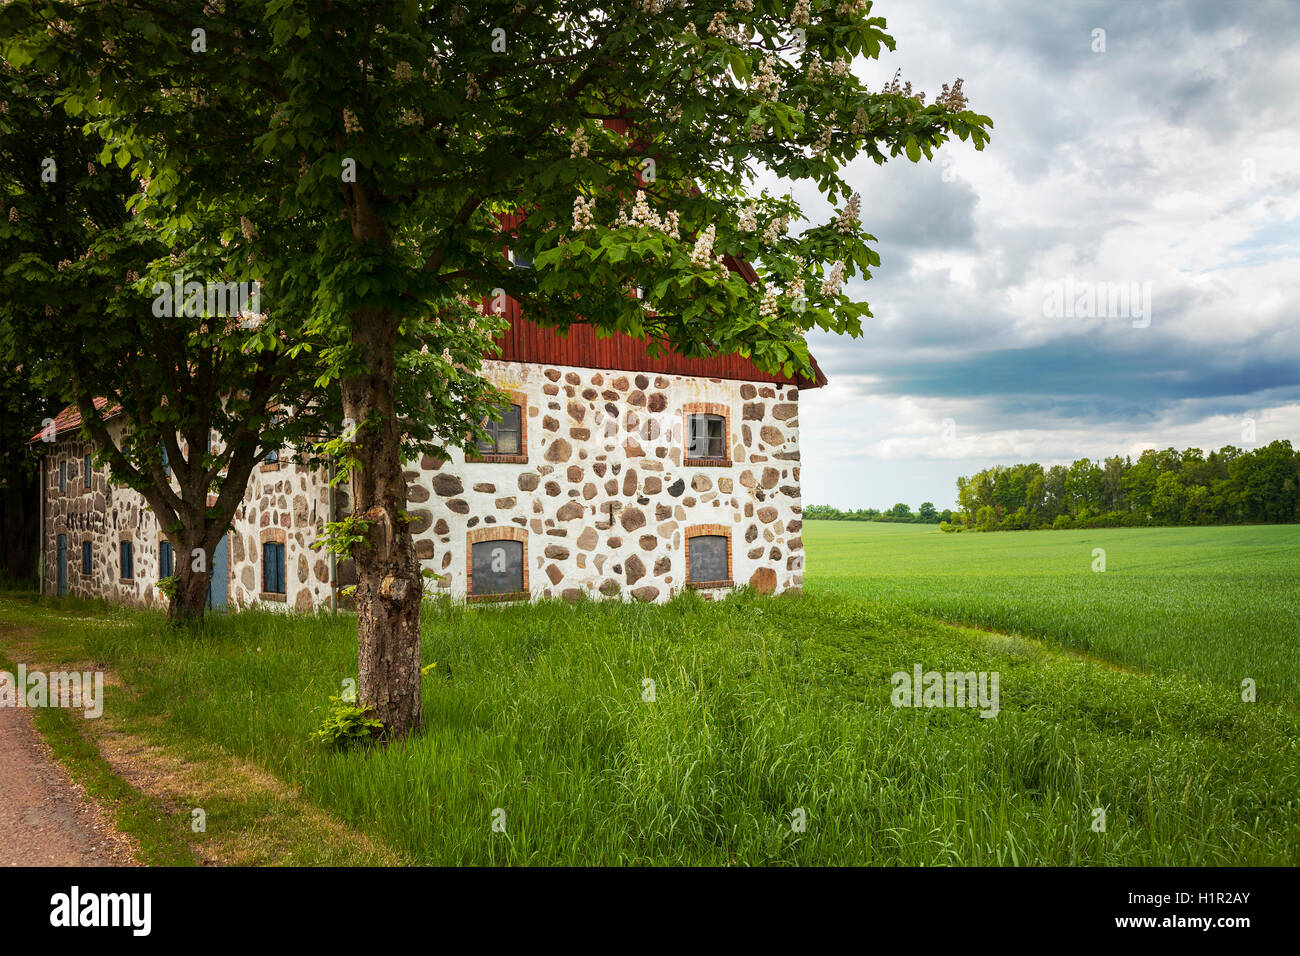 Image de la grange traditionnelle en pierre. Scania, la Suède. Banque D'Images